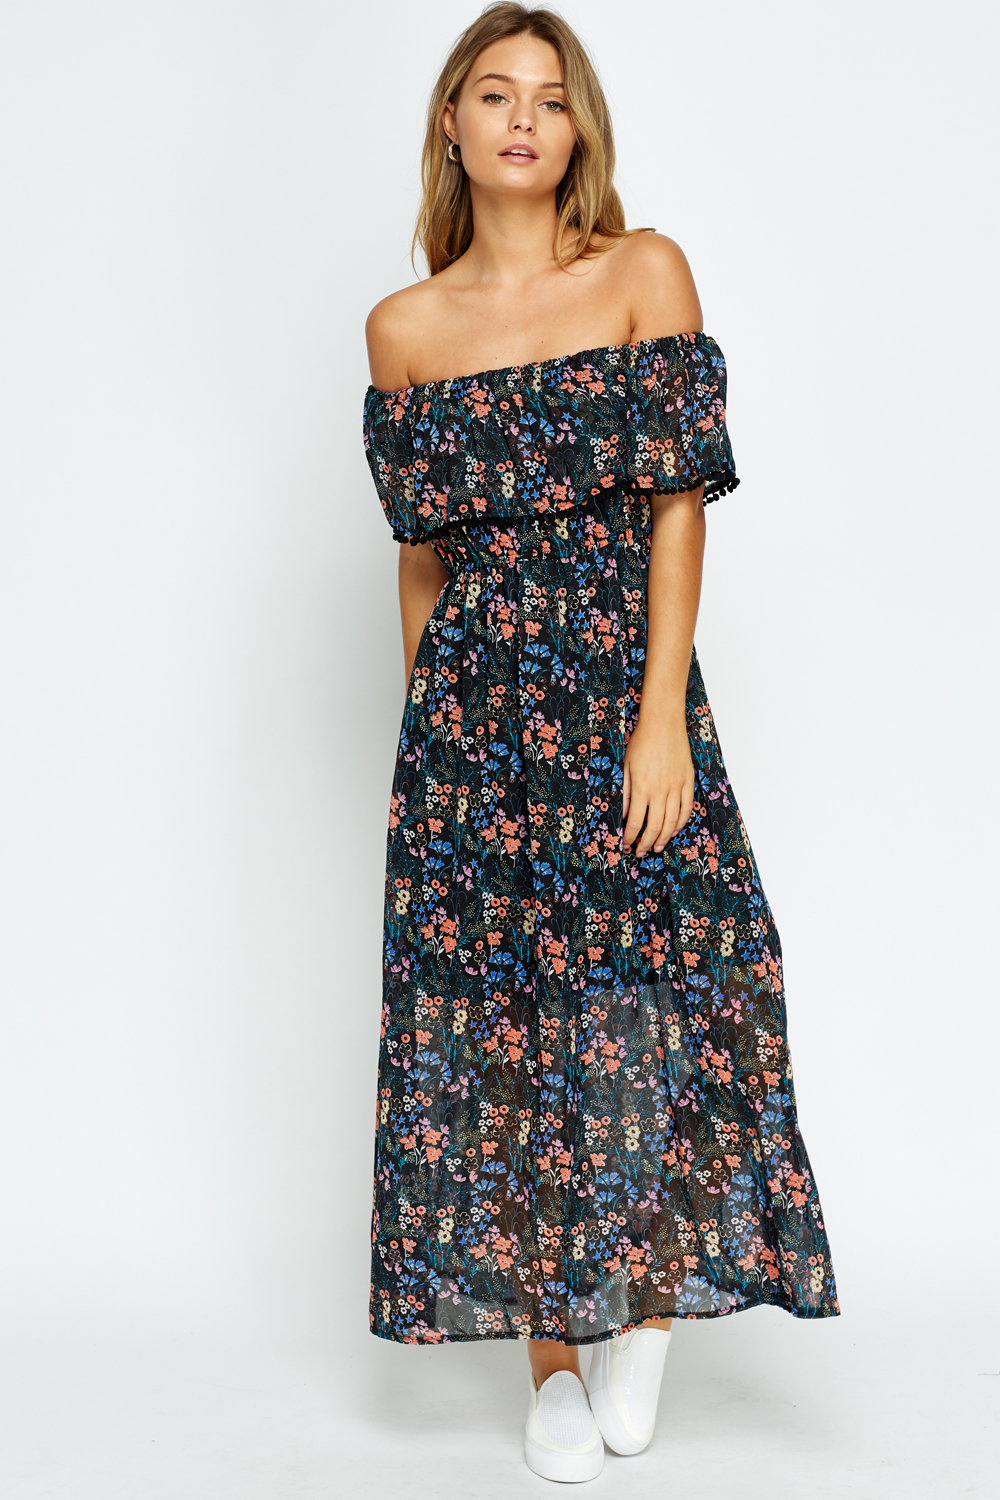 Off Shoulder Floral Dress - Just $6